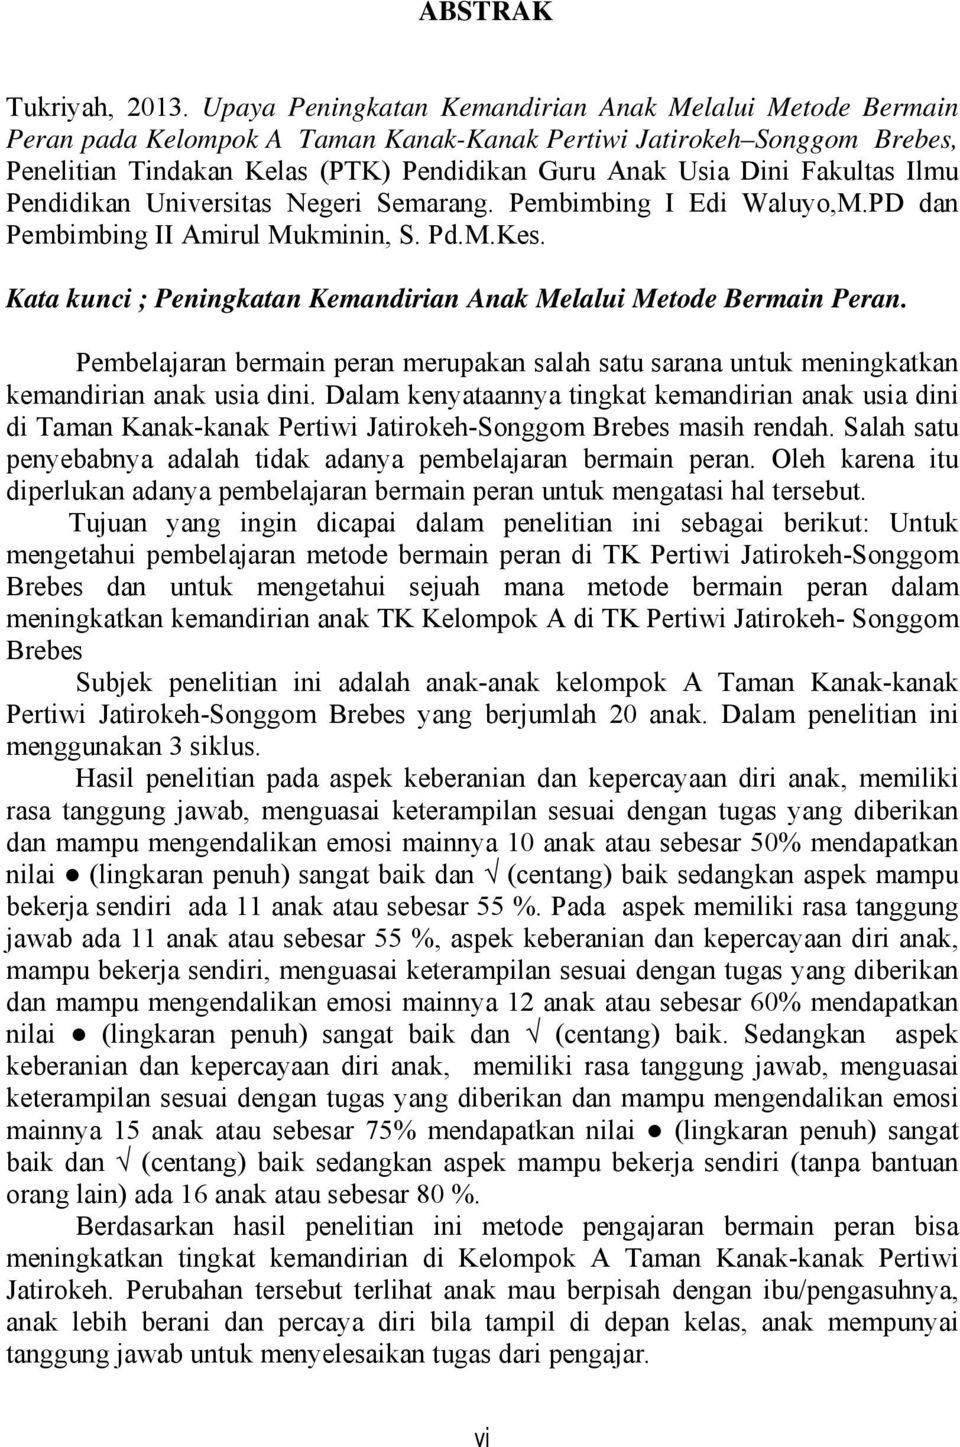 Fakultas Ilmu Pendidikan Universitas Negeri Semarang. Pembimbing I Edi Waluyo,M.PD dan Pembimbing II Amirul Mukminin, S. Pd.M.Kes.